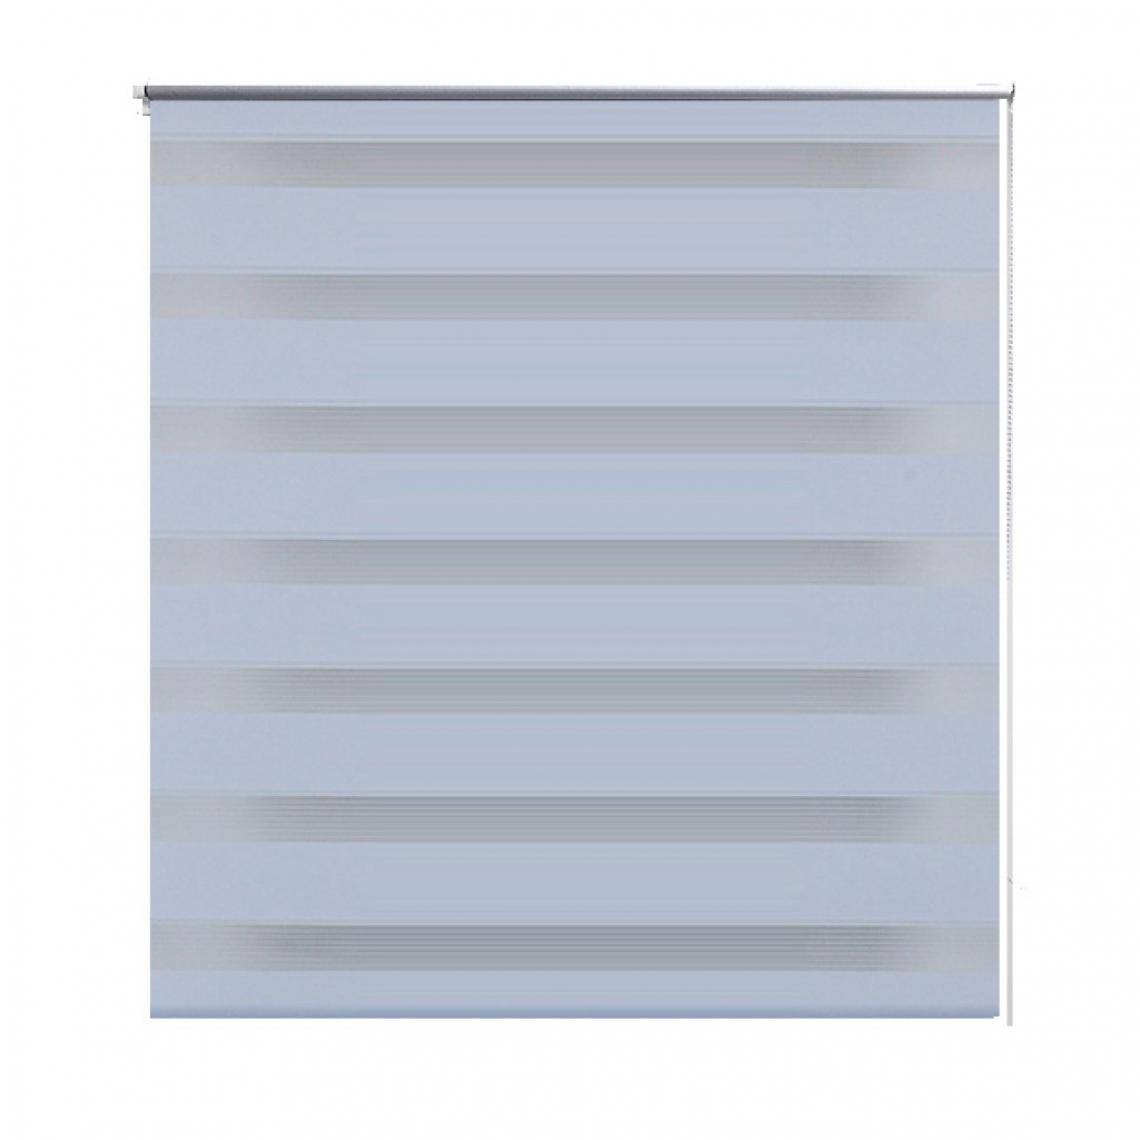 Helloshop26 - Store enrouleur blanc tamisant 120 x 230 cm fenêtre rideau pare-vue volet roulant 4102112 - Store compatible Velux